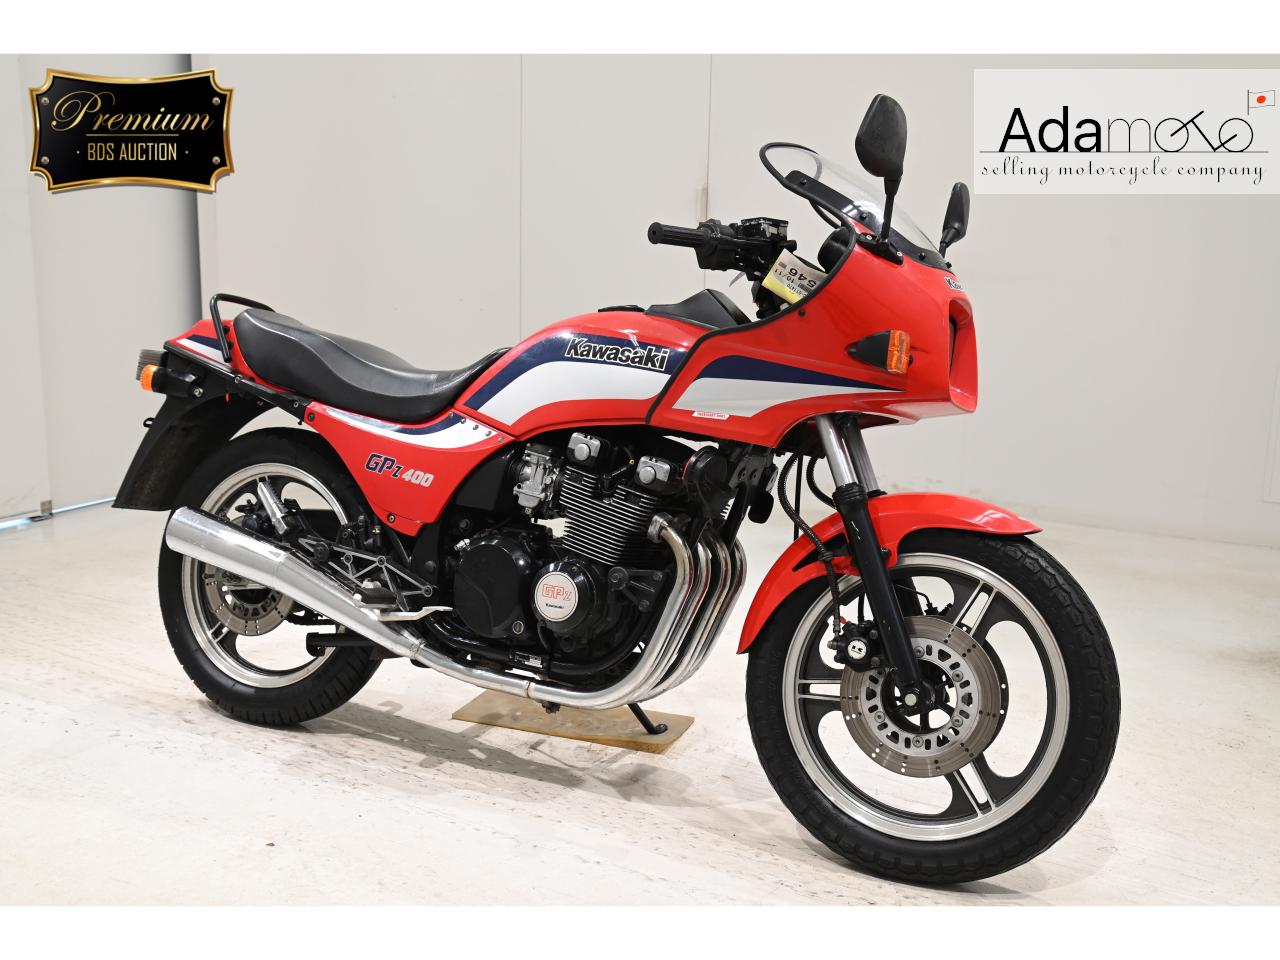 Kawasaki GPZ400 - Adamoto - Motorcycles from Japan